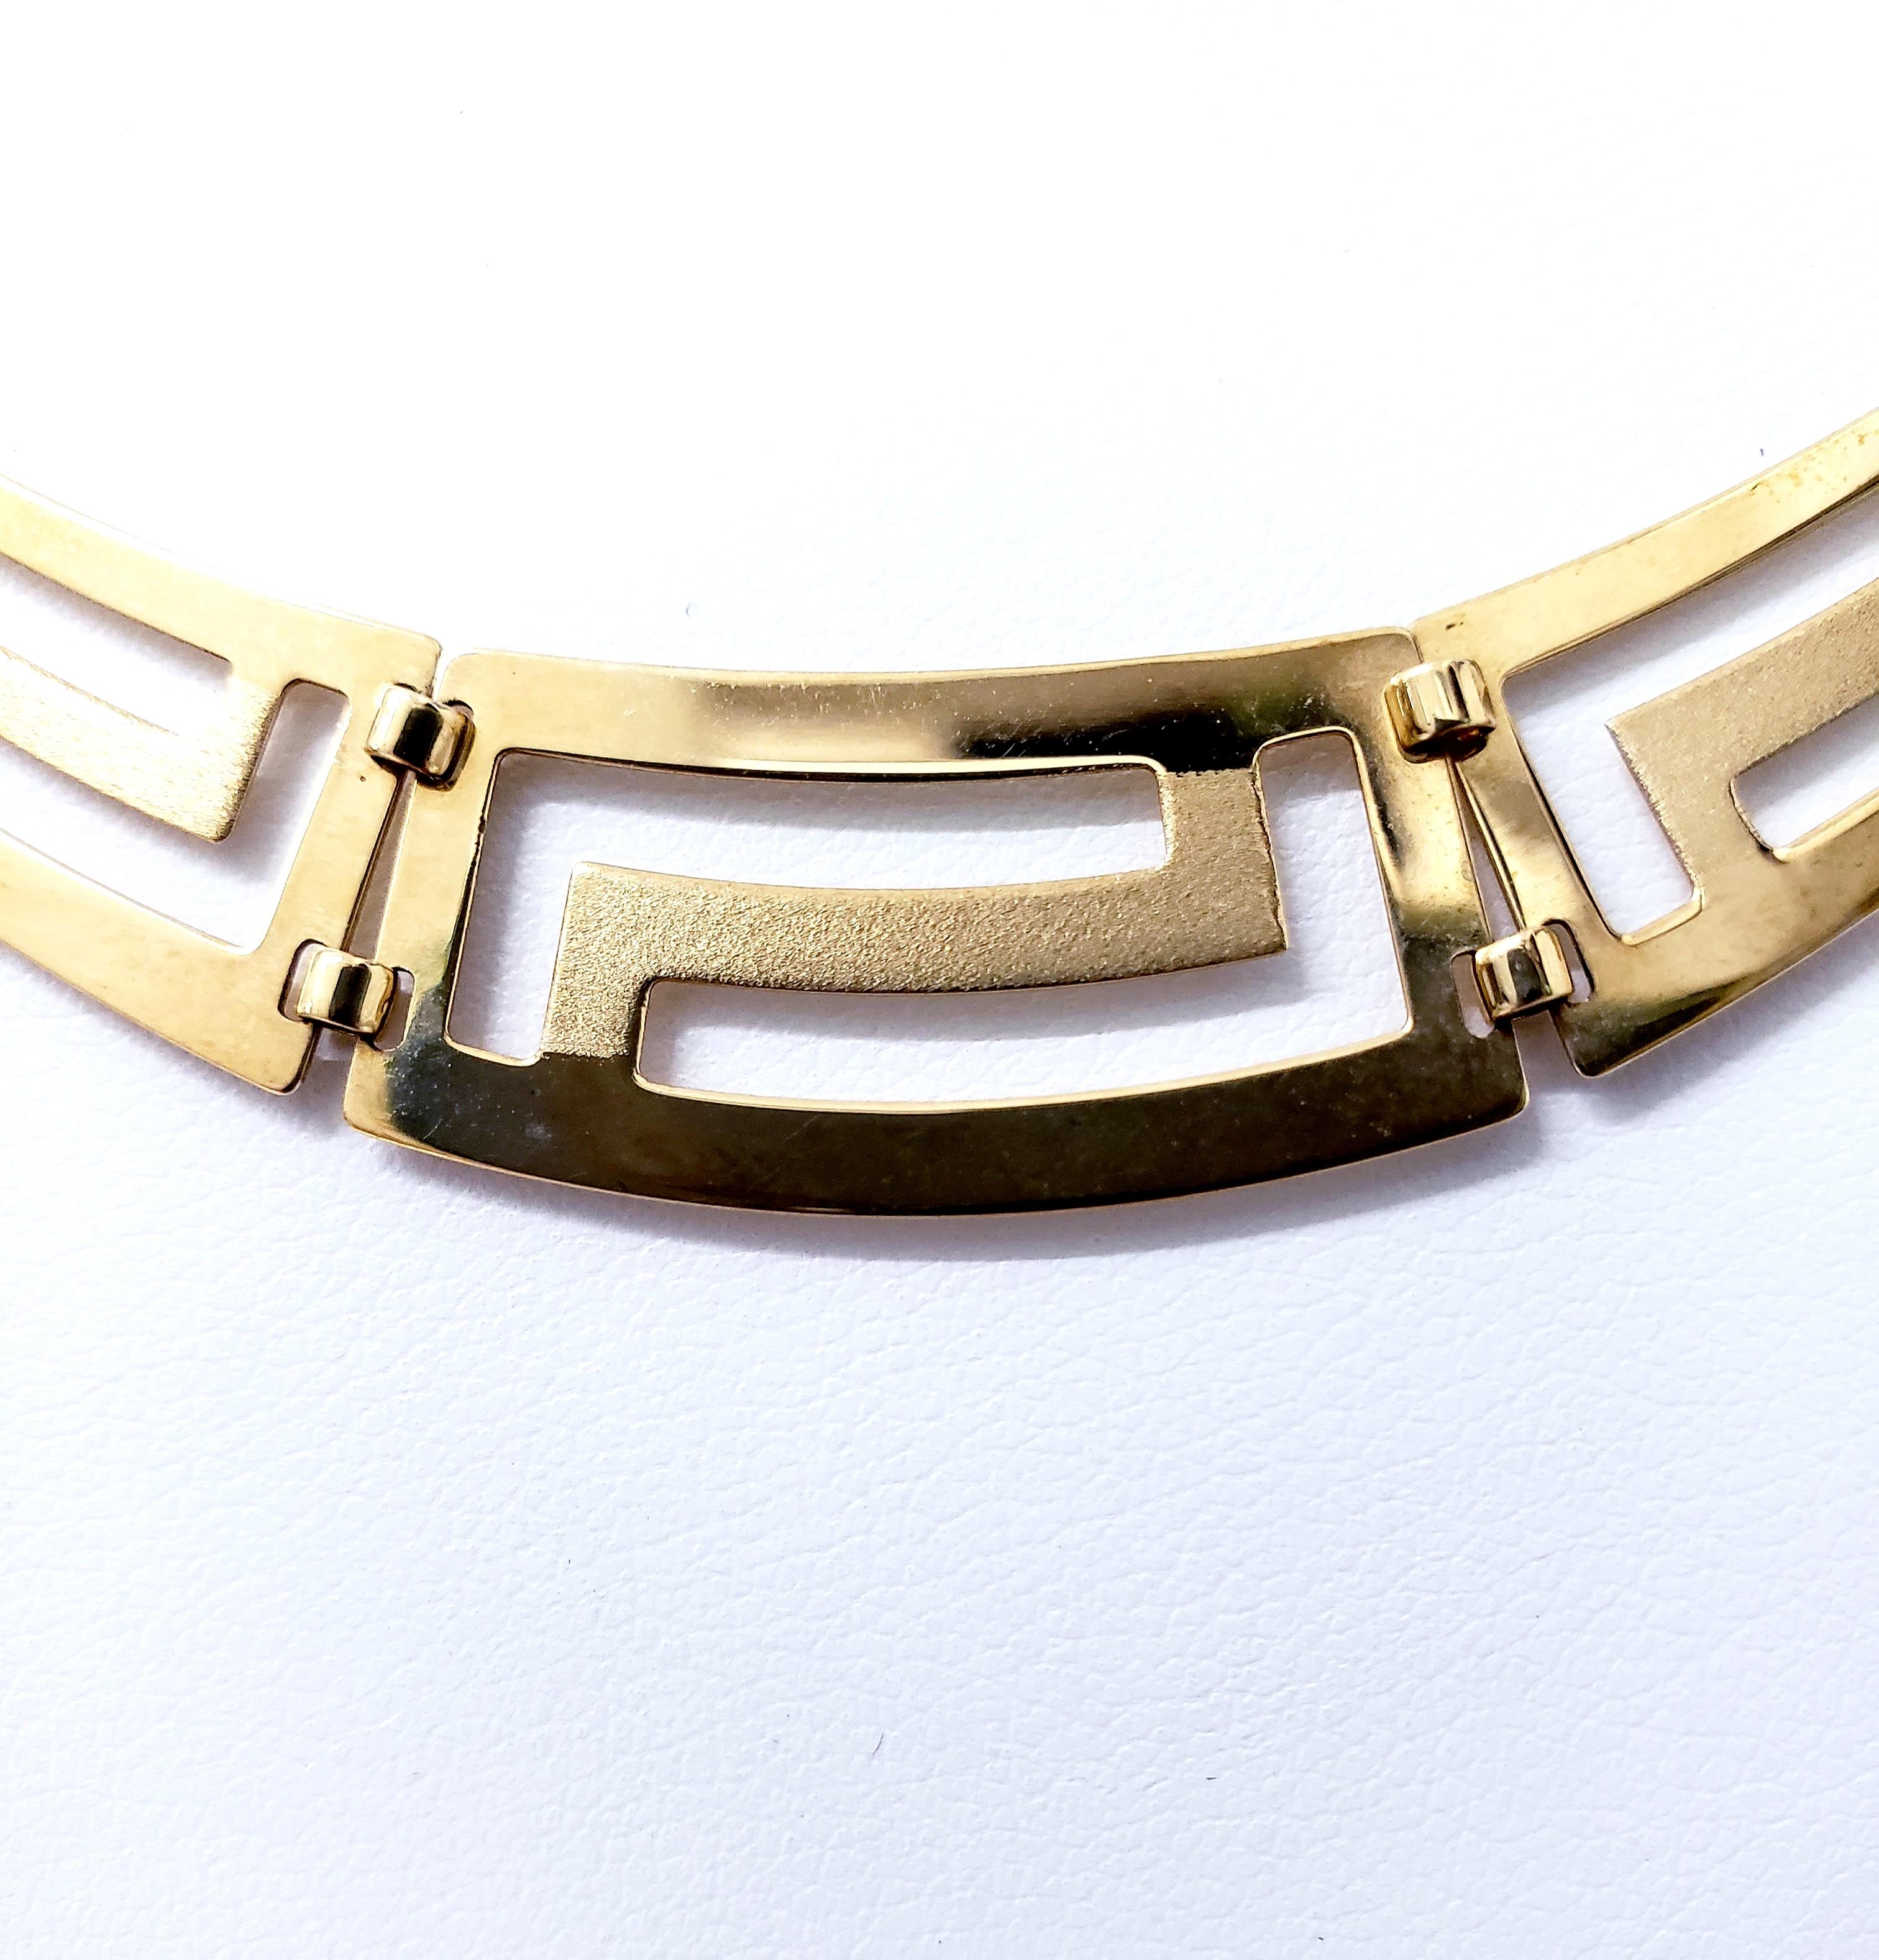 Vintage Greek Design mit Satin Finish 14k Gold Halskette. Die Länge der Halskette beträgt 16 Zoll und die Breite ca. 4 Zoll. Hergestellt in der Türkei.